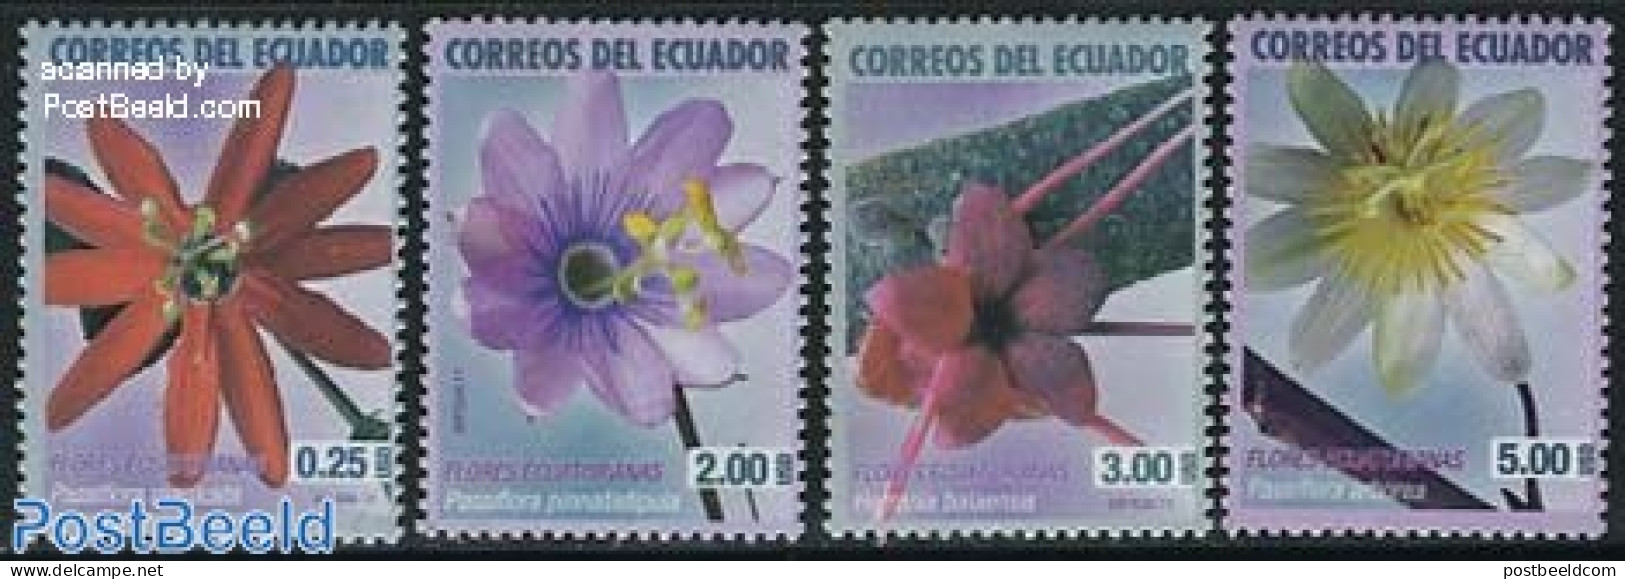 Ecuador 2011 Flowers 4v, Mint NH, Nature - Flowers & Plants - Equateur